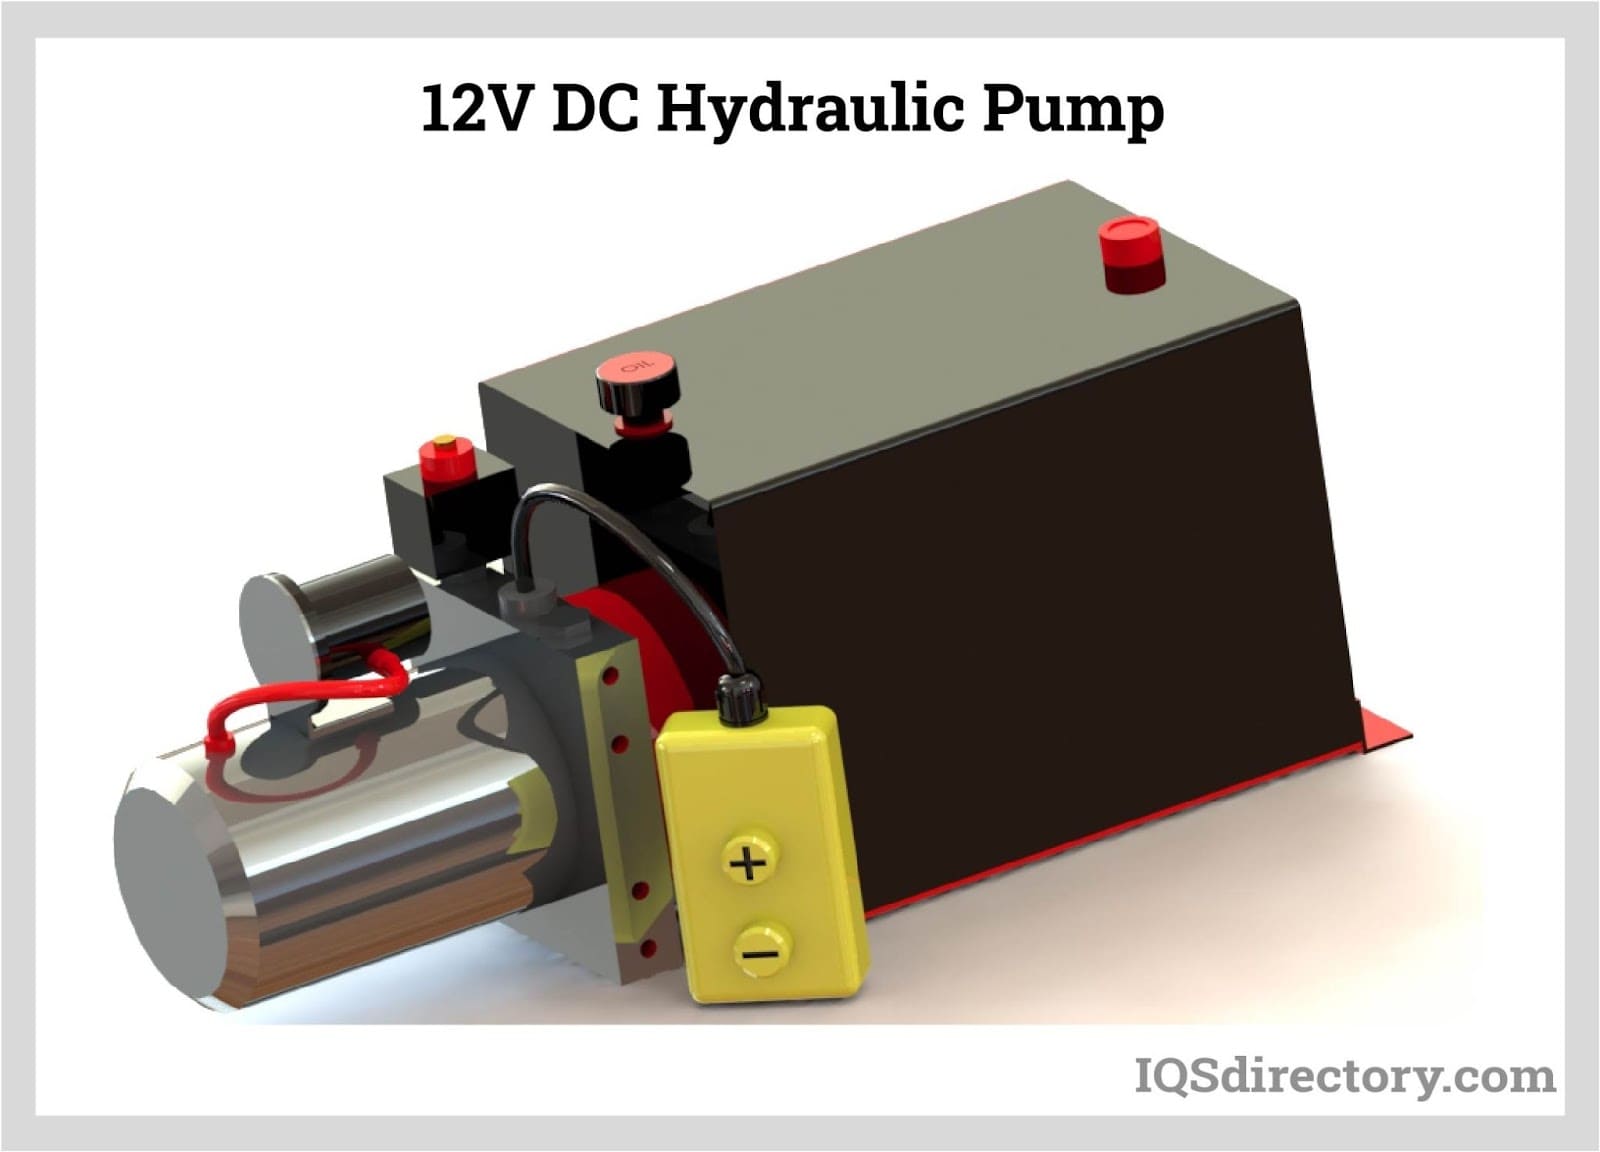 12V DC Hydraulic Pump